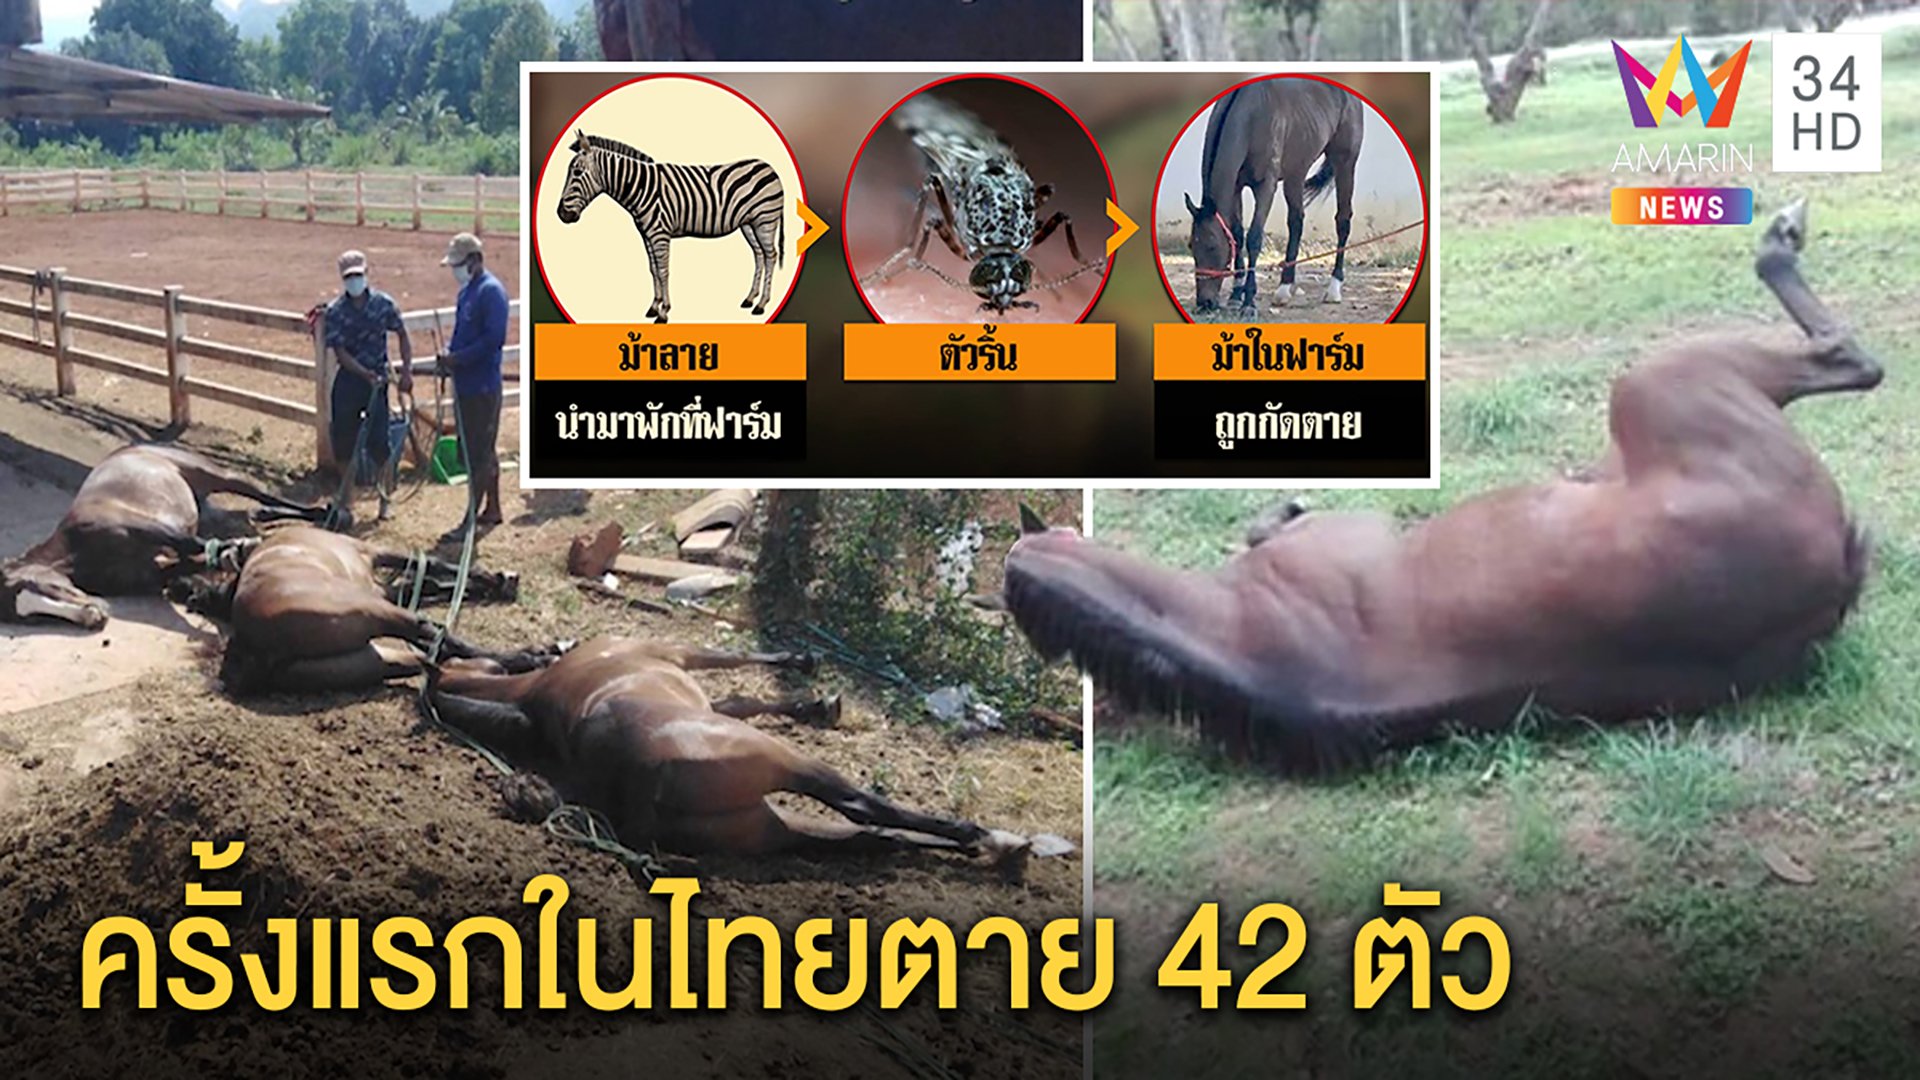 ครั้งแรกในไทย!ม้าแข่งตายเฉียบพลัน42ตัว พบตัวริ้นพาหะนำโรค ฟาร์มเจอหายนะ 11 แห่ง | ทุบโต๊ะข่าว | 27 มี.ค. 63 | AMARIN TVHD34